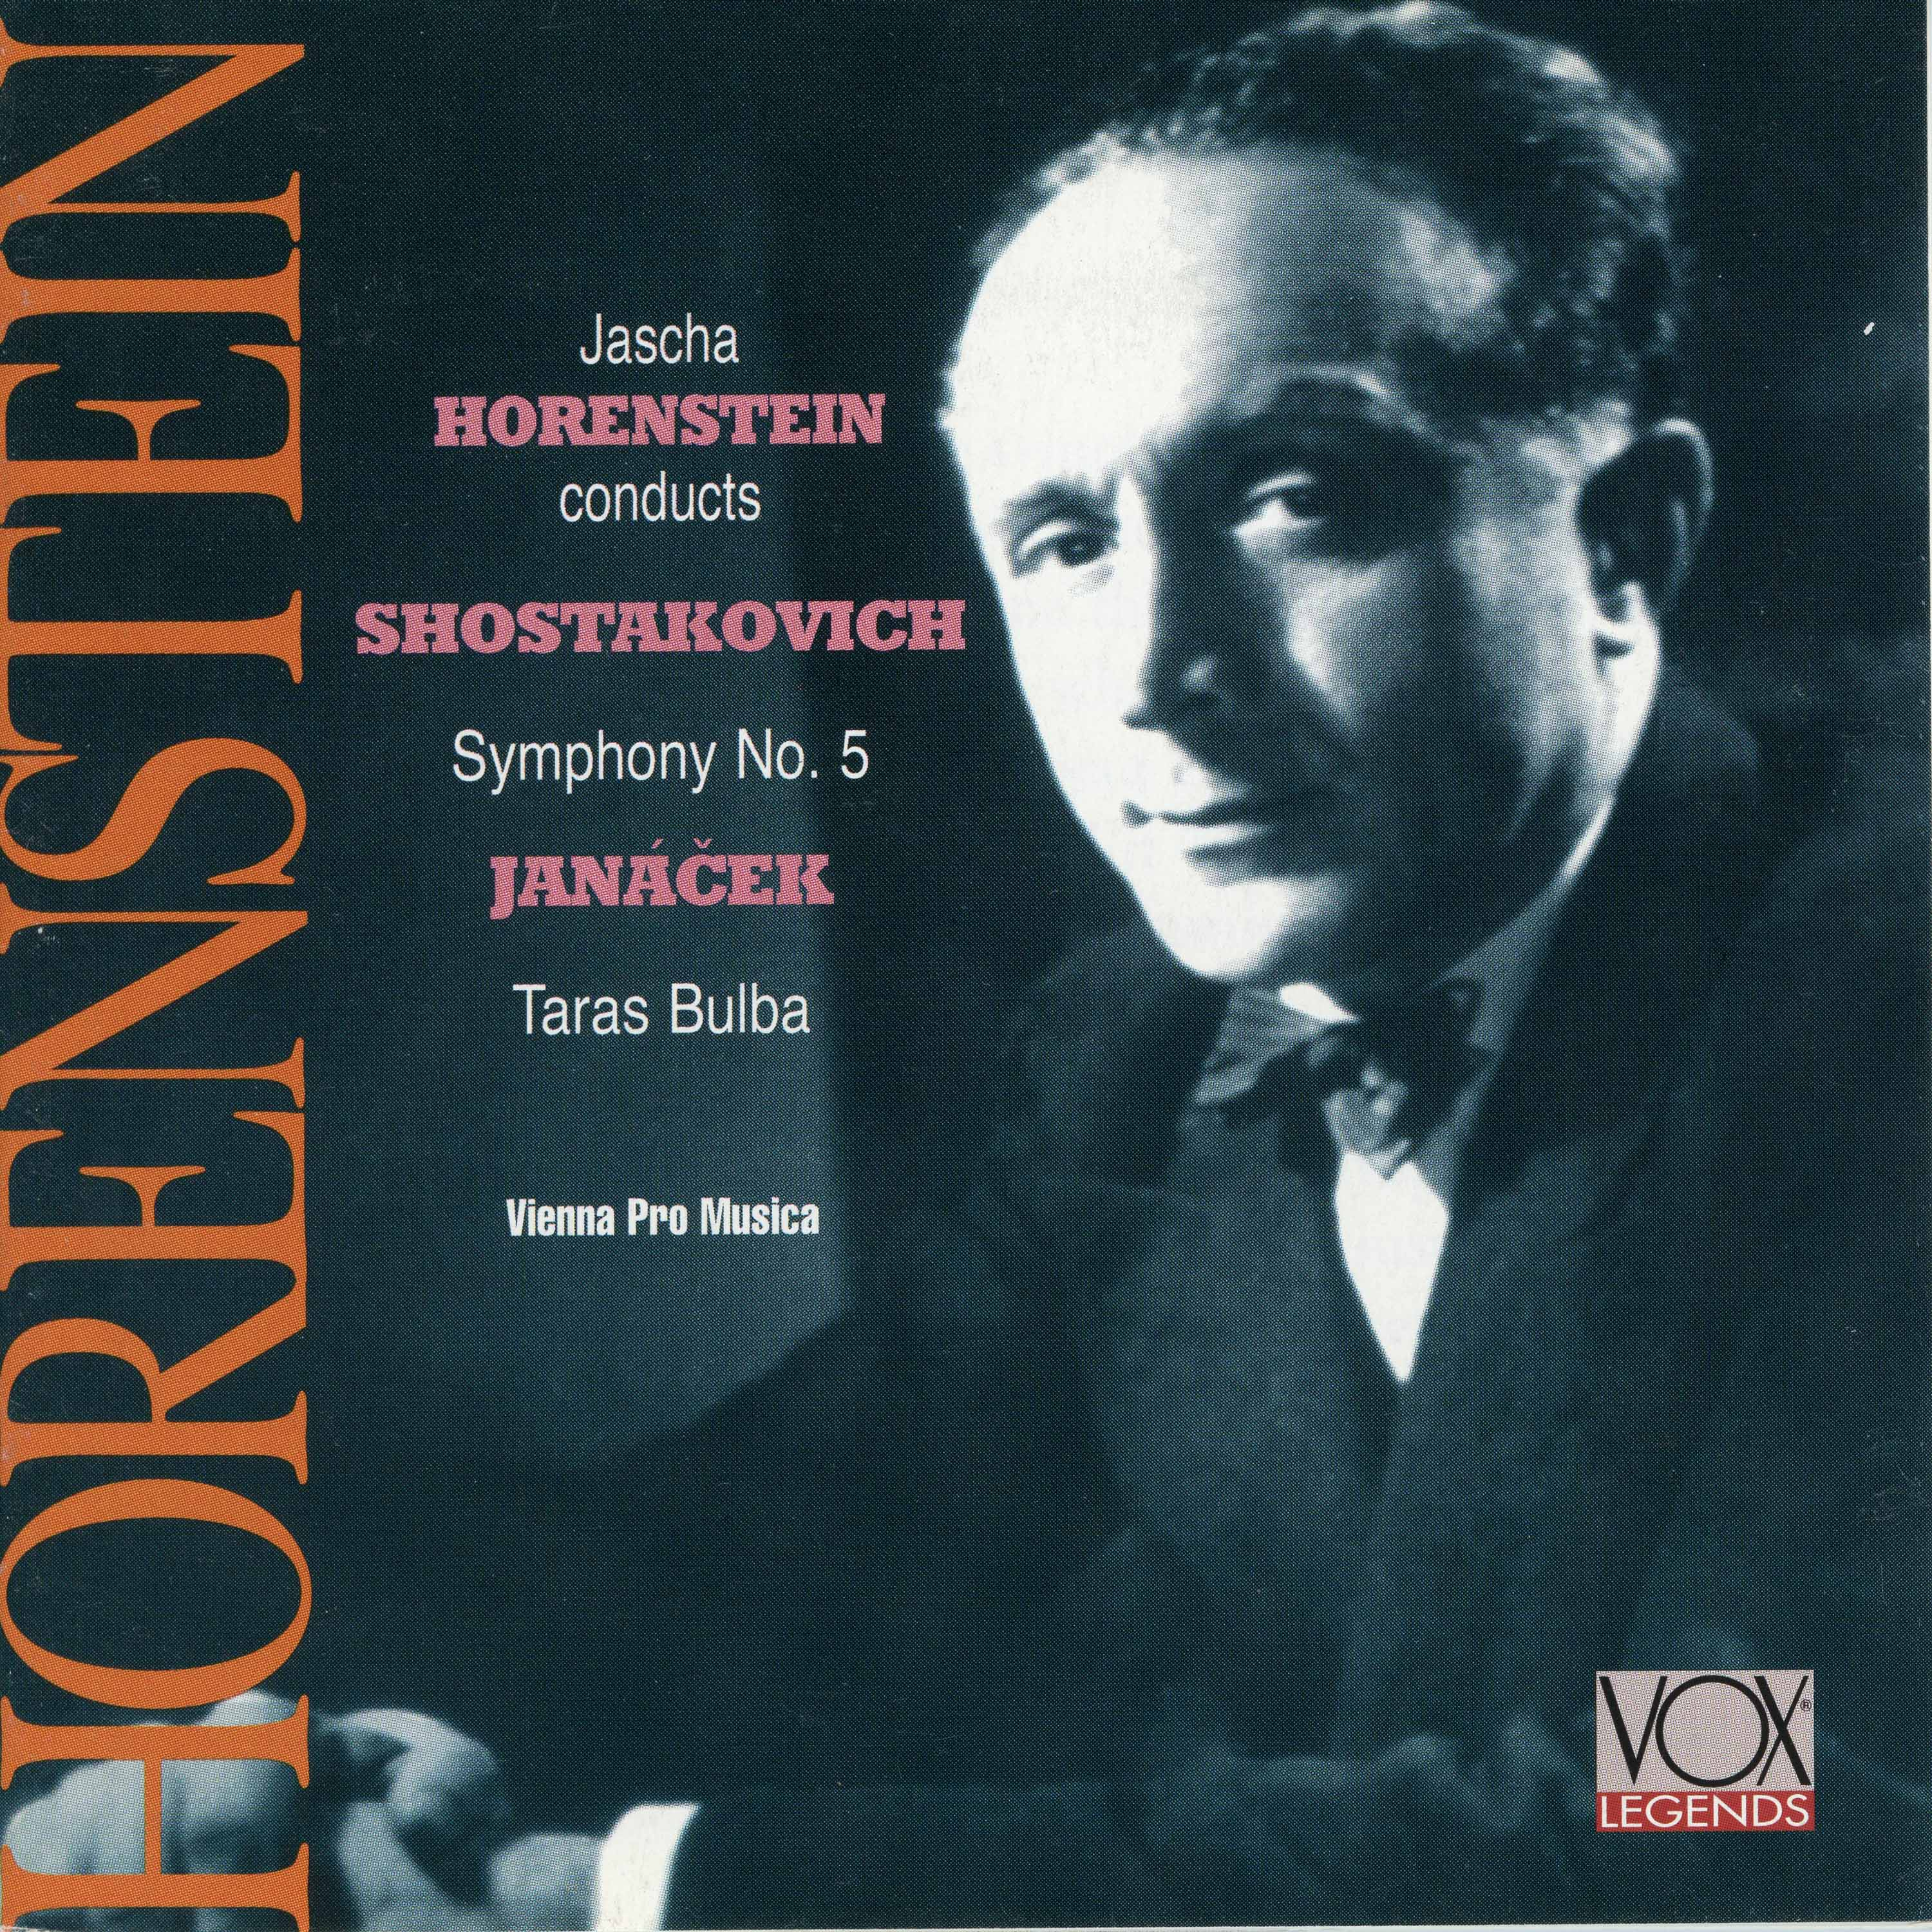 Shostakovich: Symphony No. 5 - Janácek: Taras Bulba